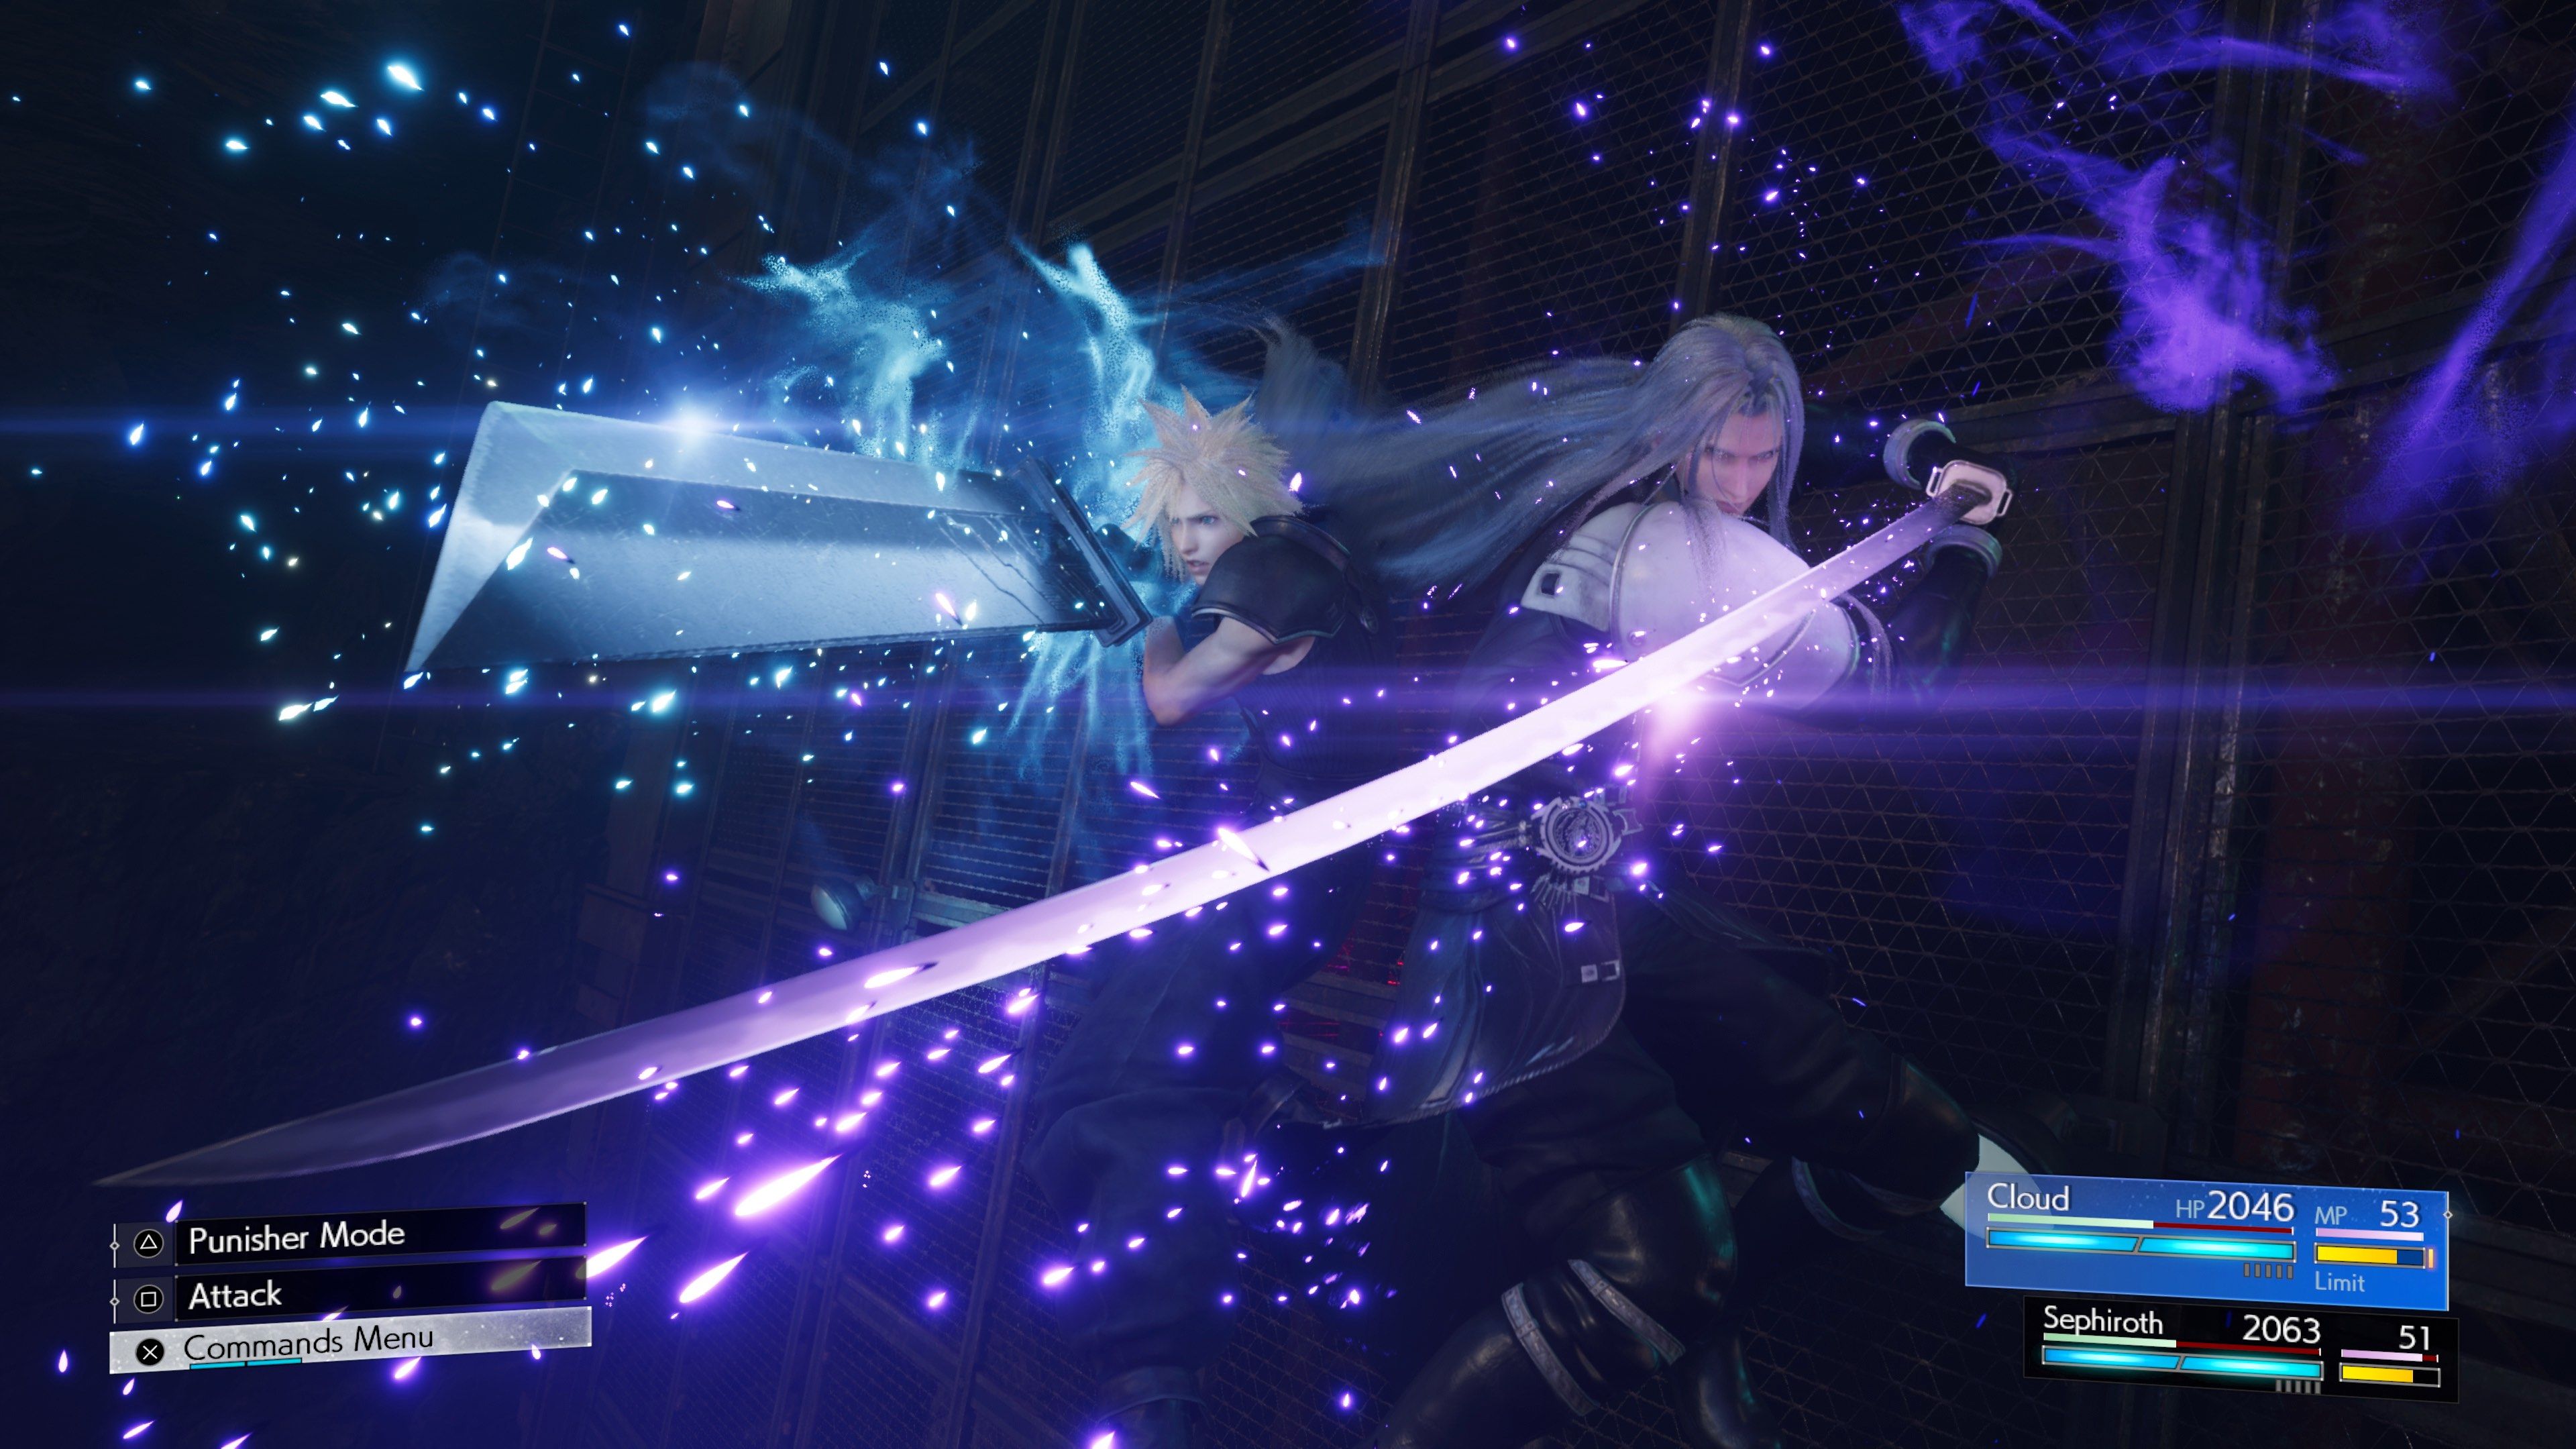 Final Fantasy VII Rebirth llegará a PS4 o será exclusivo de PlayStation 5?